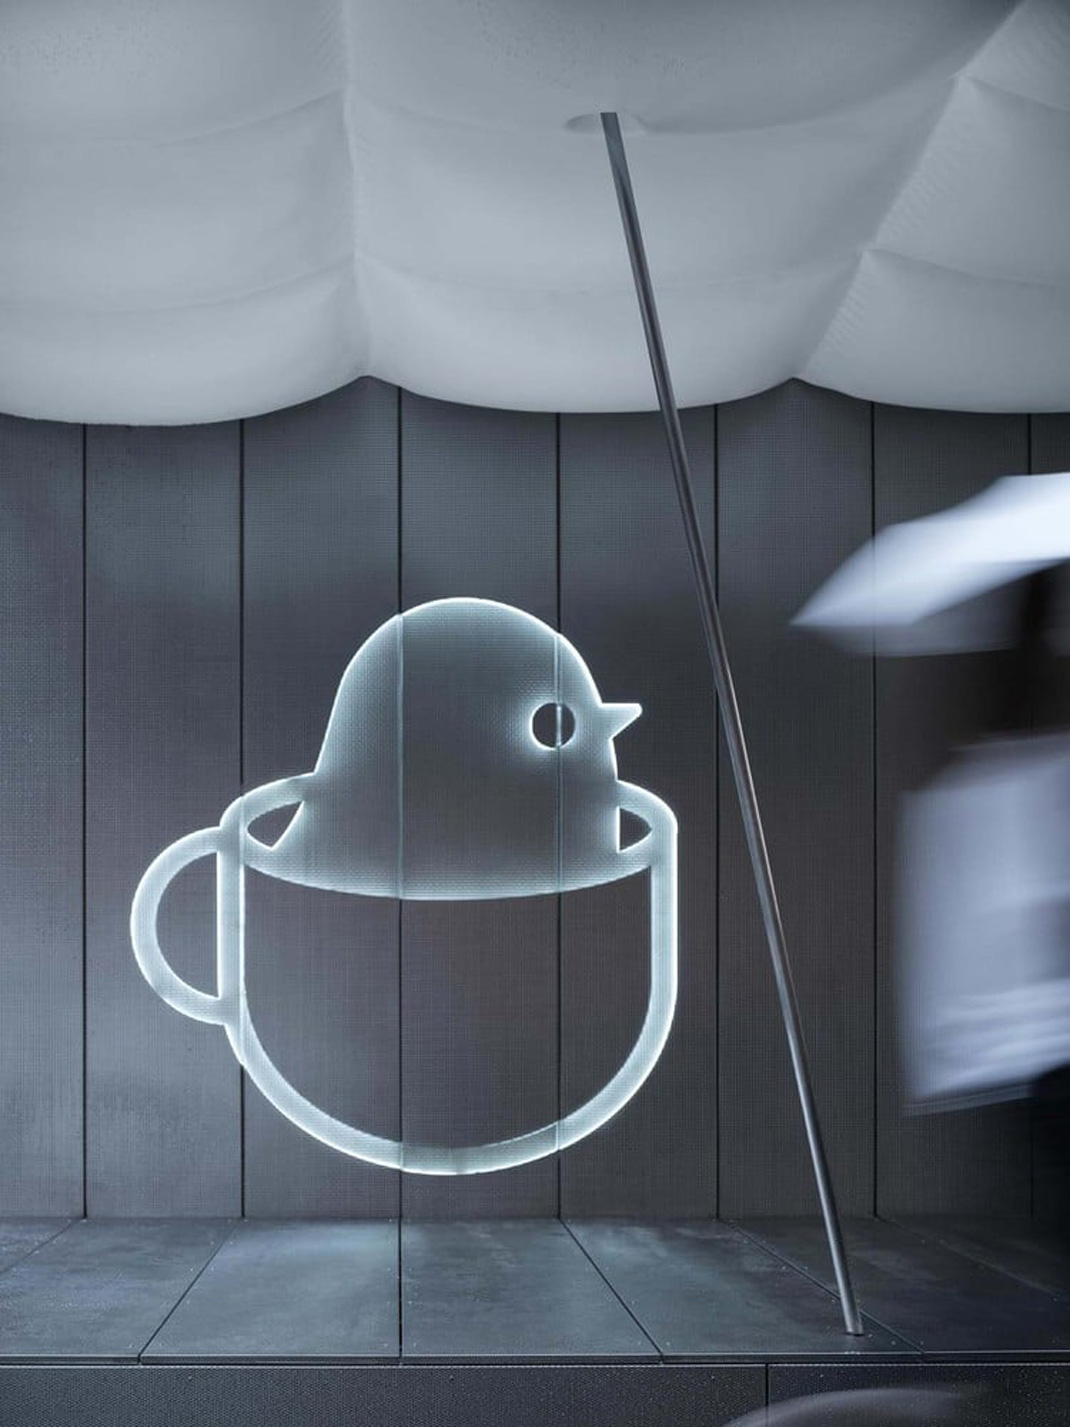 咖啡店Birdie Cup Coffee 上海 咖啡店 白色 浮板 试验空间 logo设计 vi设计 空间设计